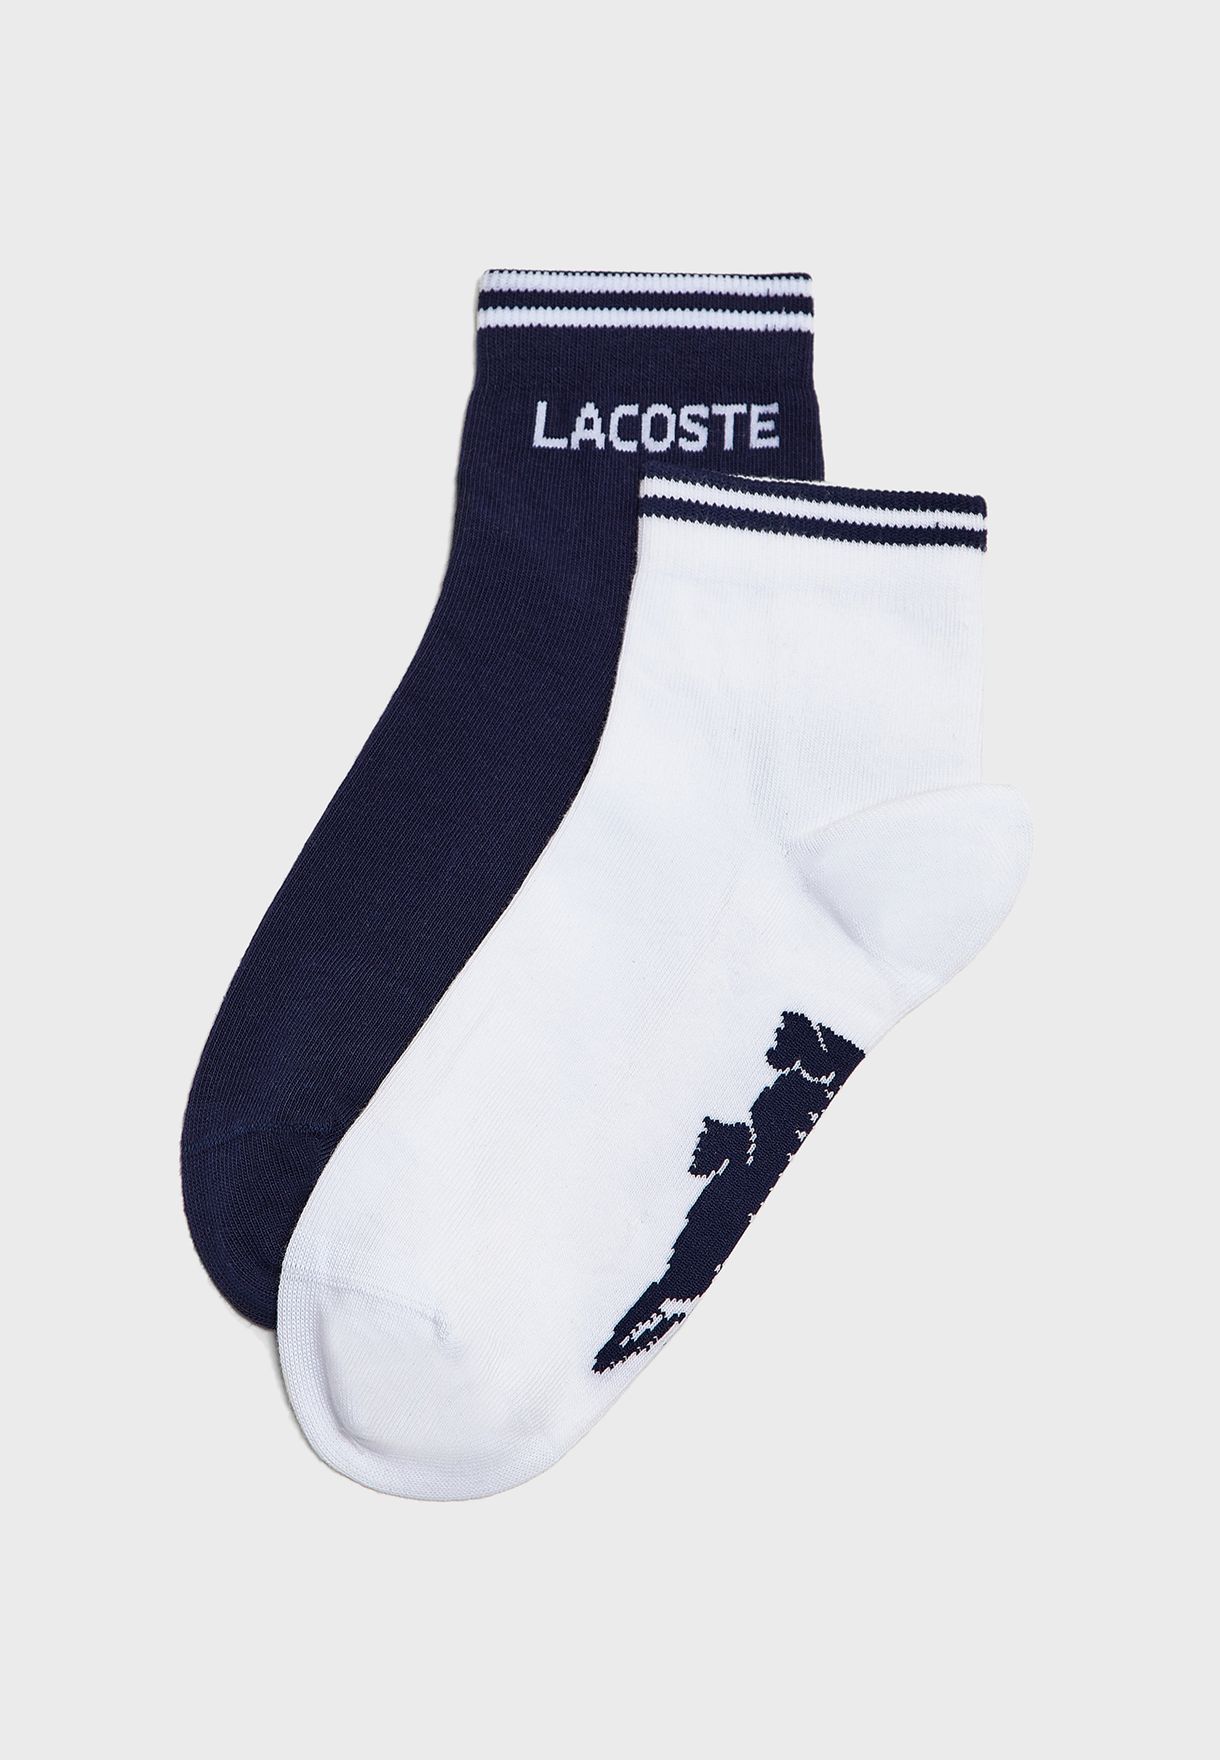 lacoste ankle socks